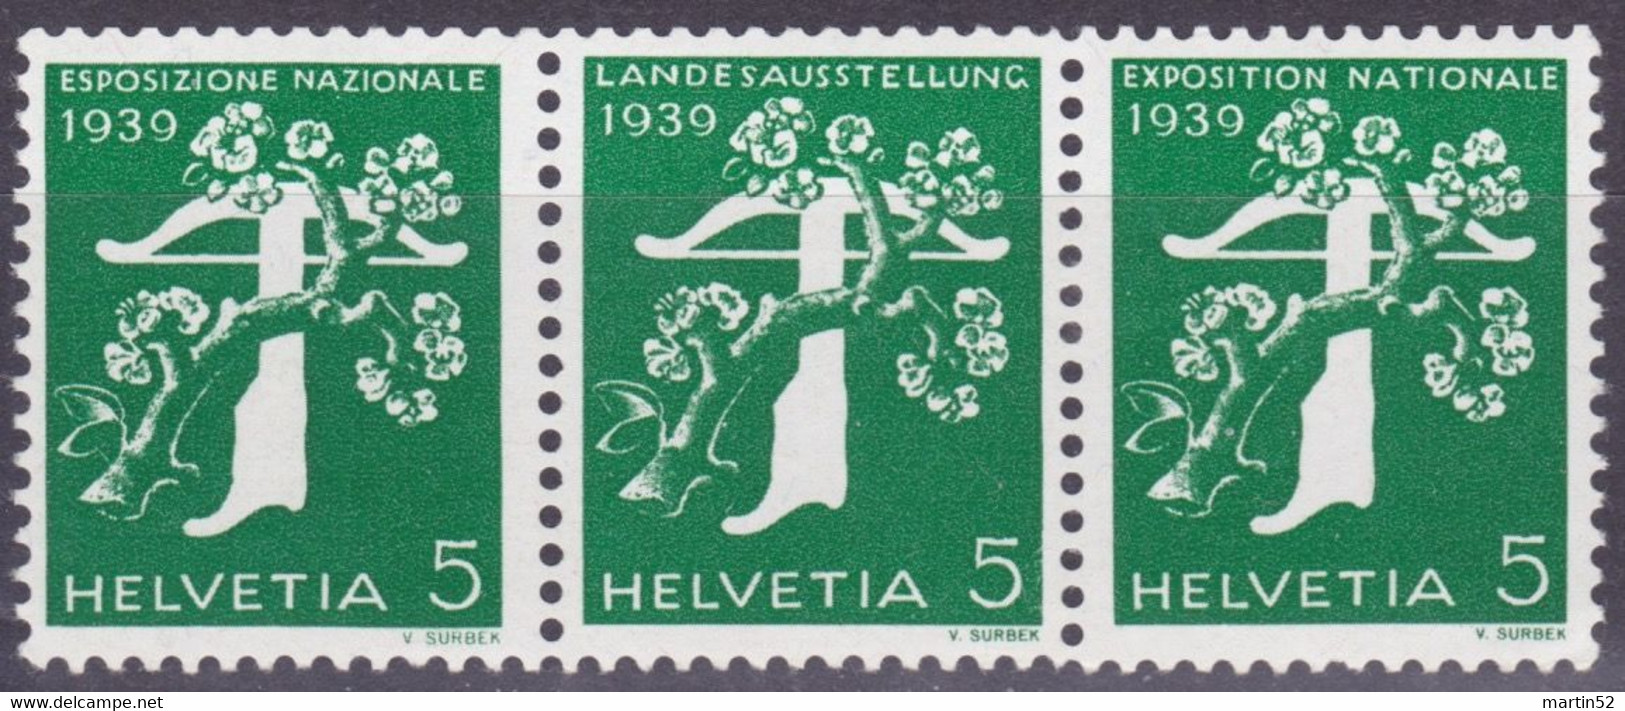 Schweiz Suisse 1939: Zusammendruck Se-tenant Zu Z25c Mi W12 ** Mit Nr. Avec N° L7295 Postfrisch MNH (Zumstein CHF 21.00) - Rouleaux